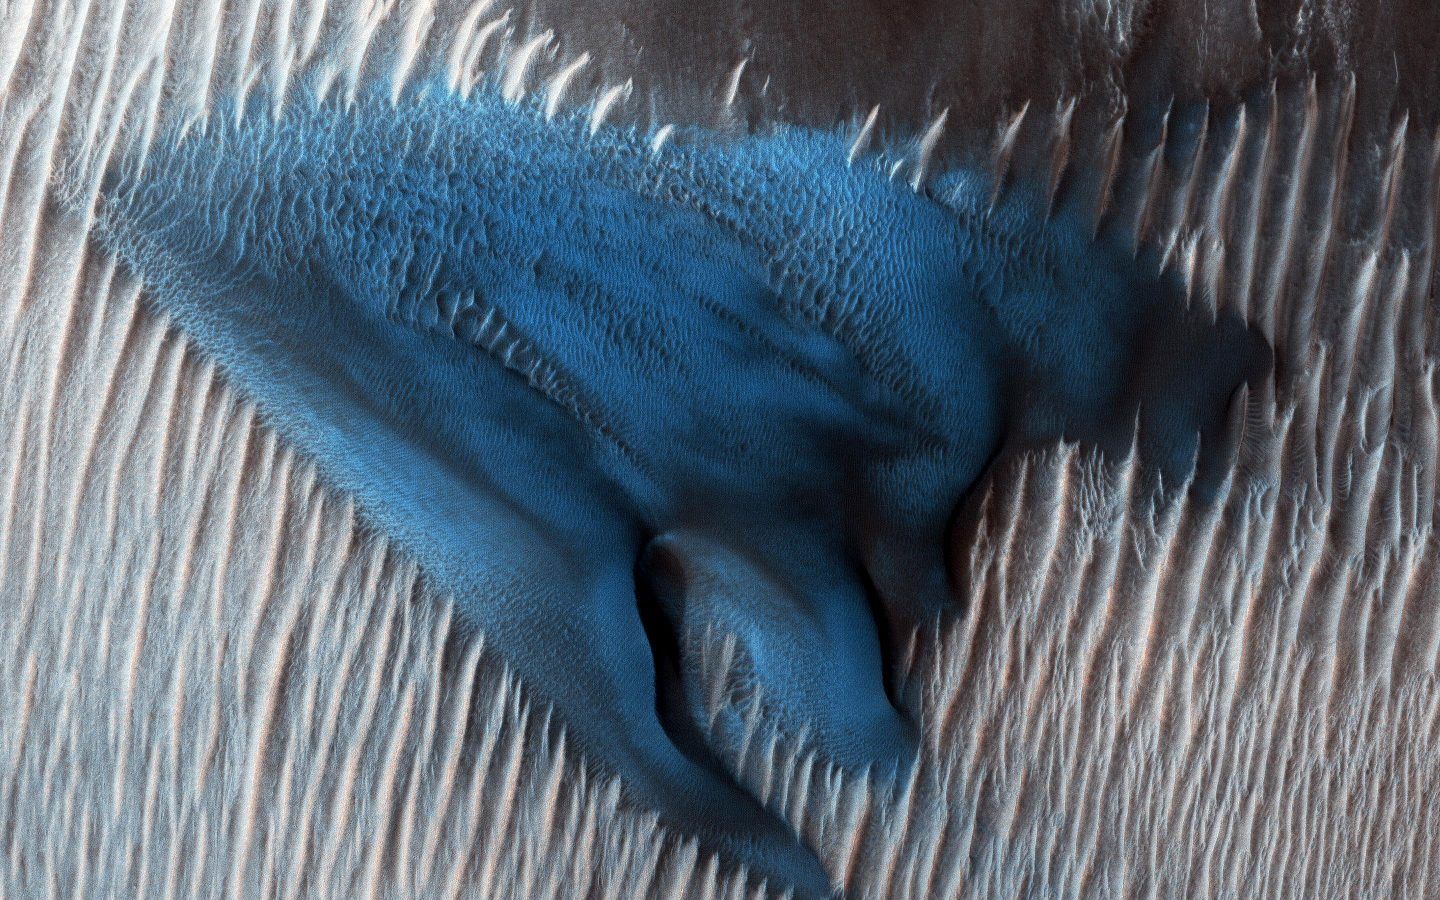 الكثبان الرملية في المريخ تتحرك بطريقة غريبة